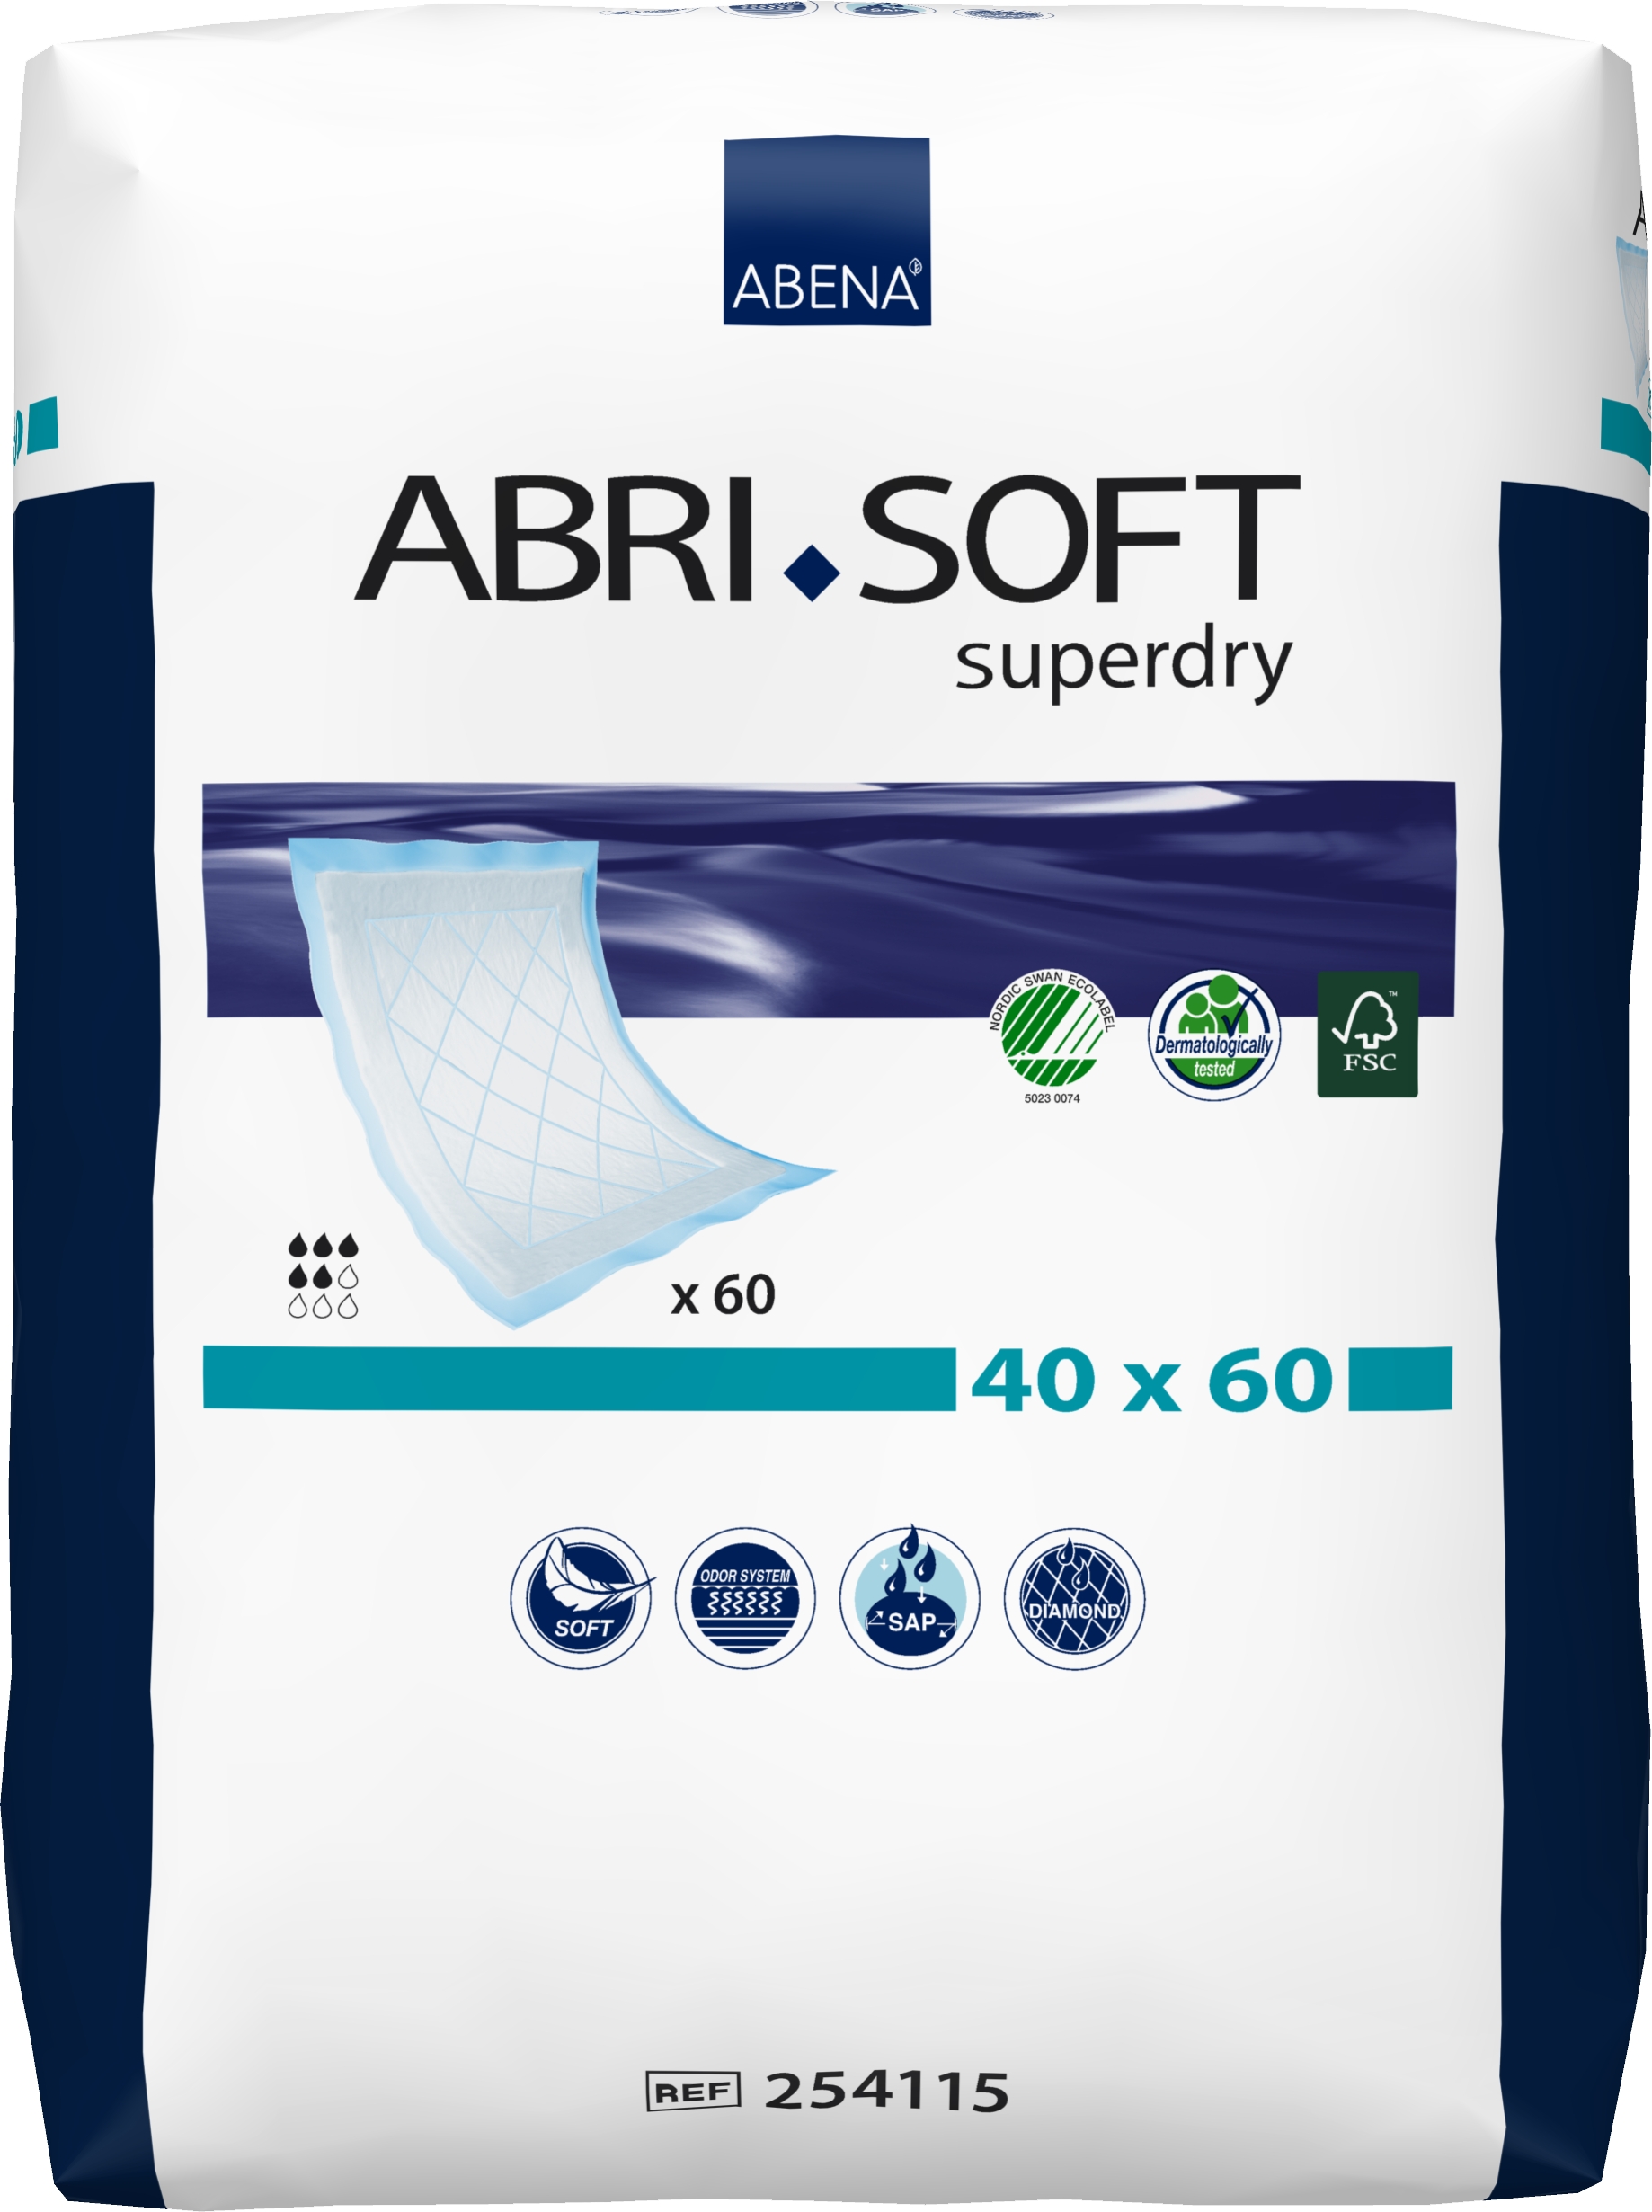 ABRI SOFT SUPERDRY, 40x60 cm